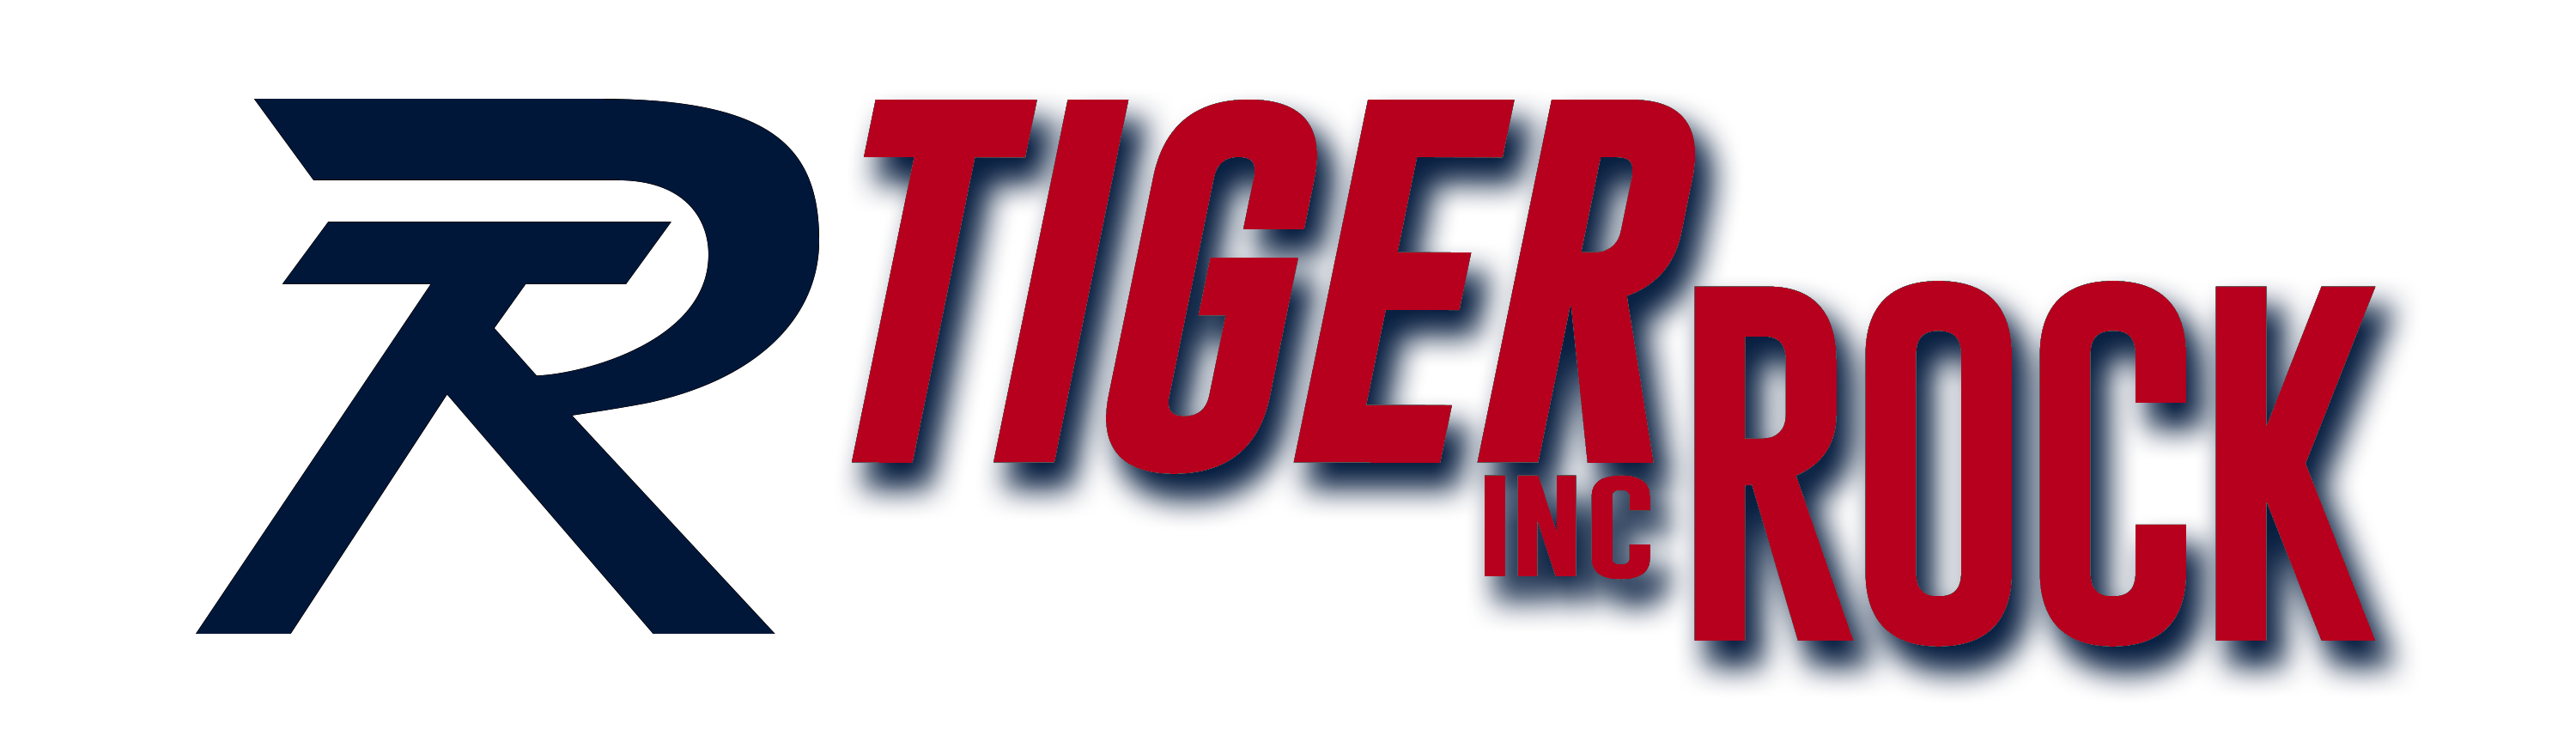 Tiger Rock Inc